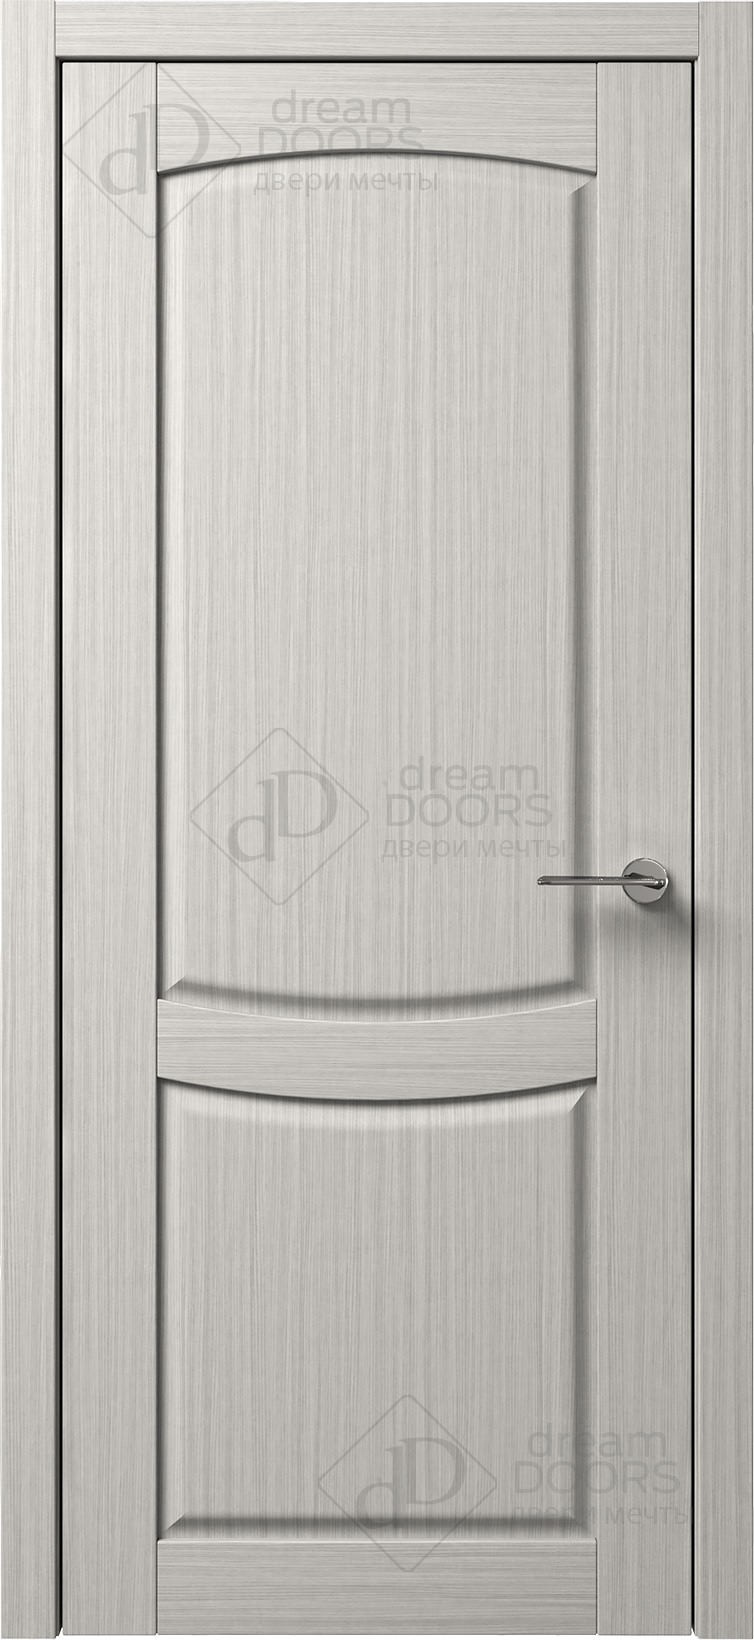 Dream Doors Межкомнатная дверь B12-3, арт. 5586 - фото №1